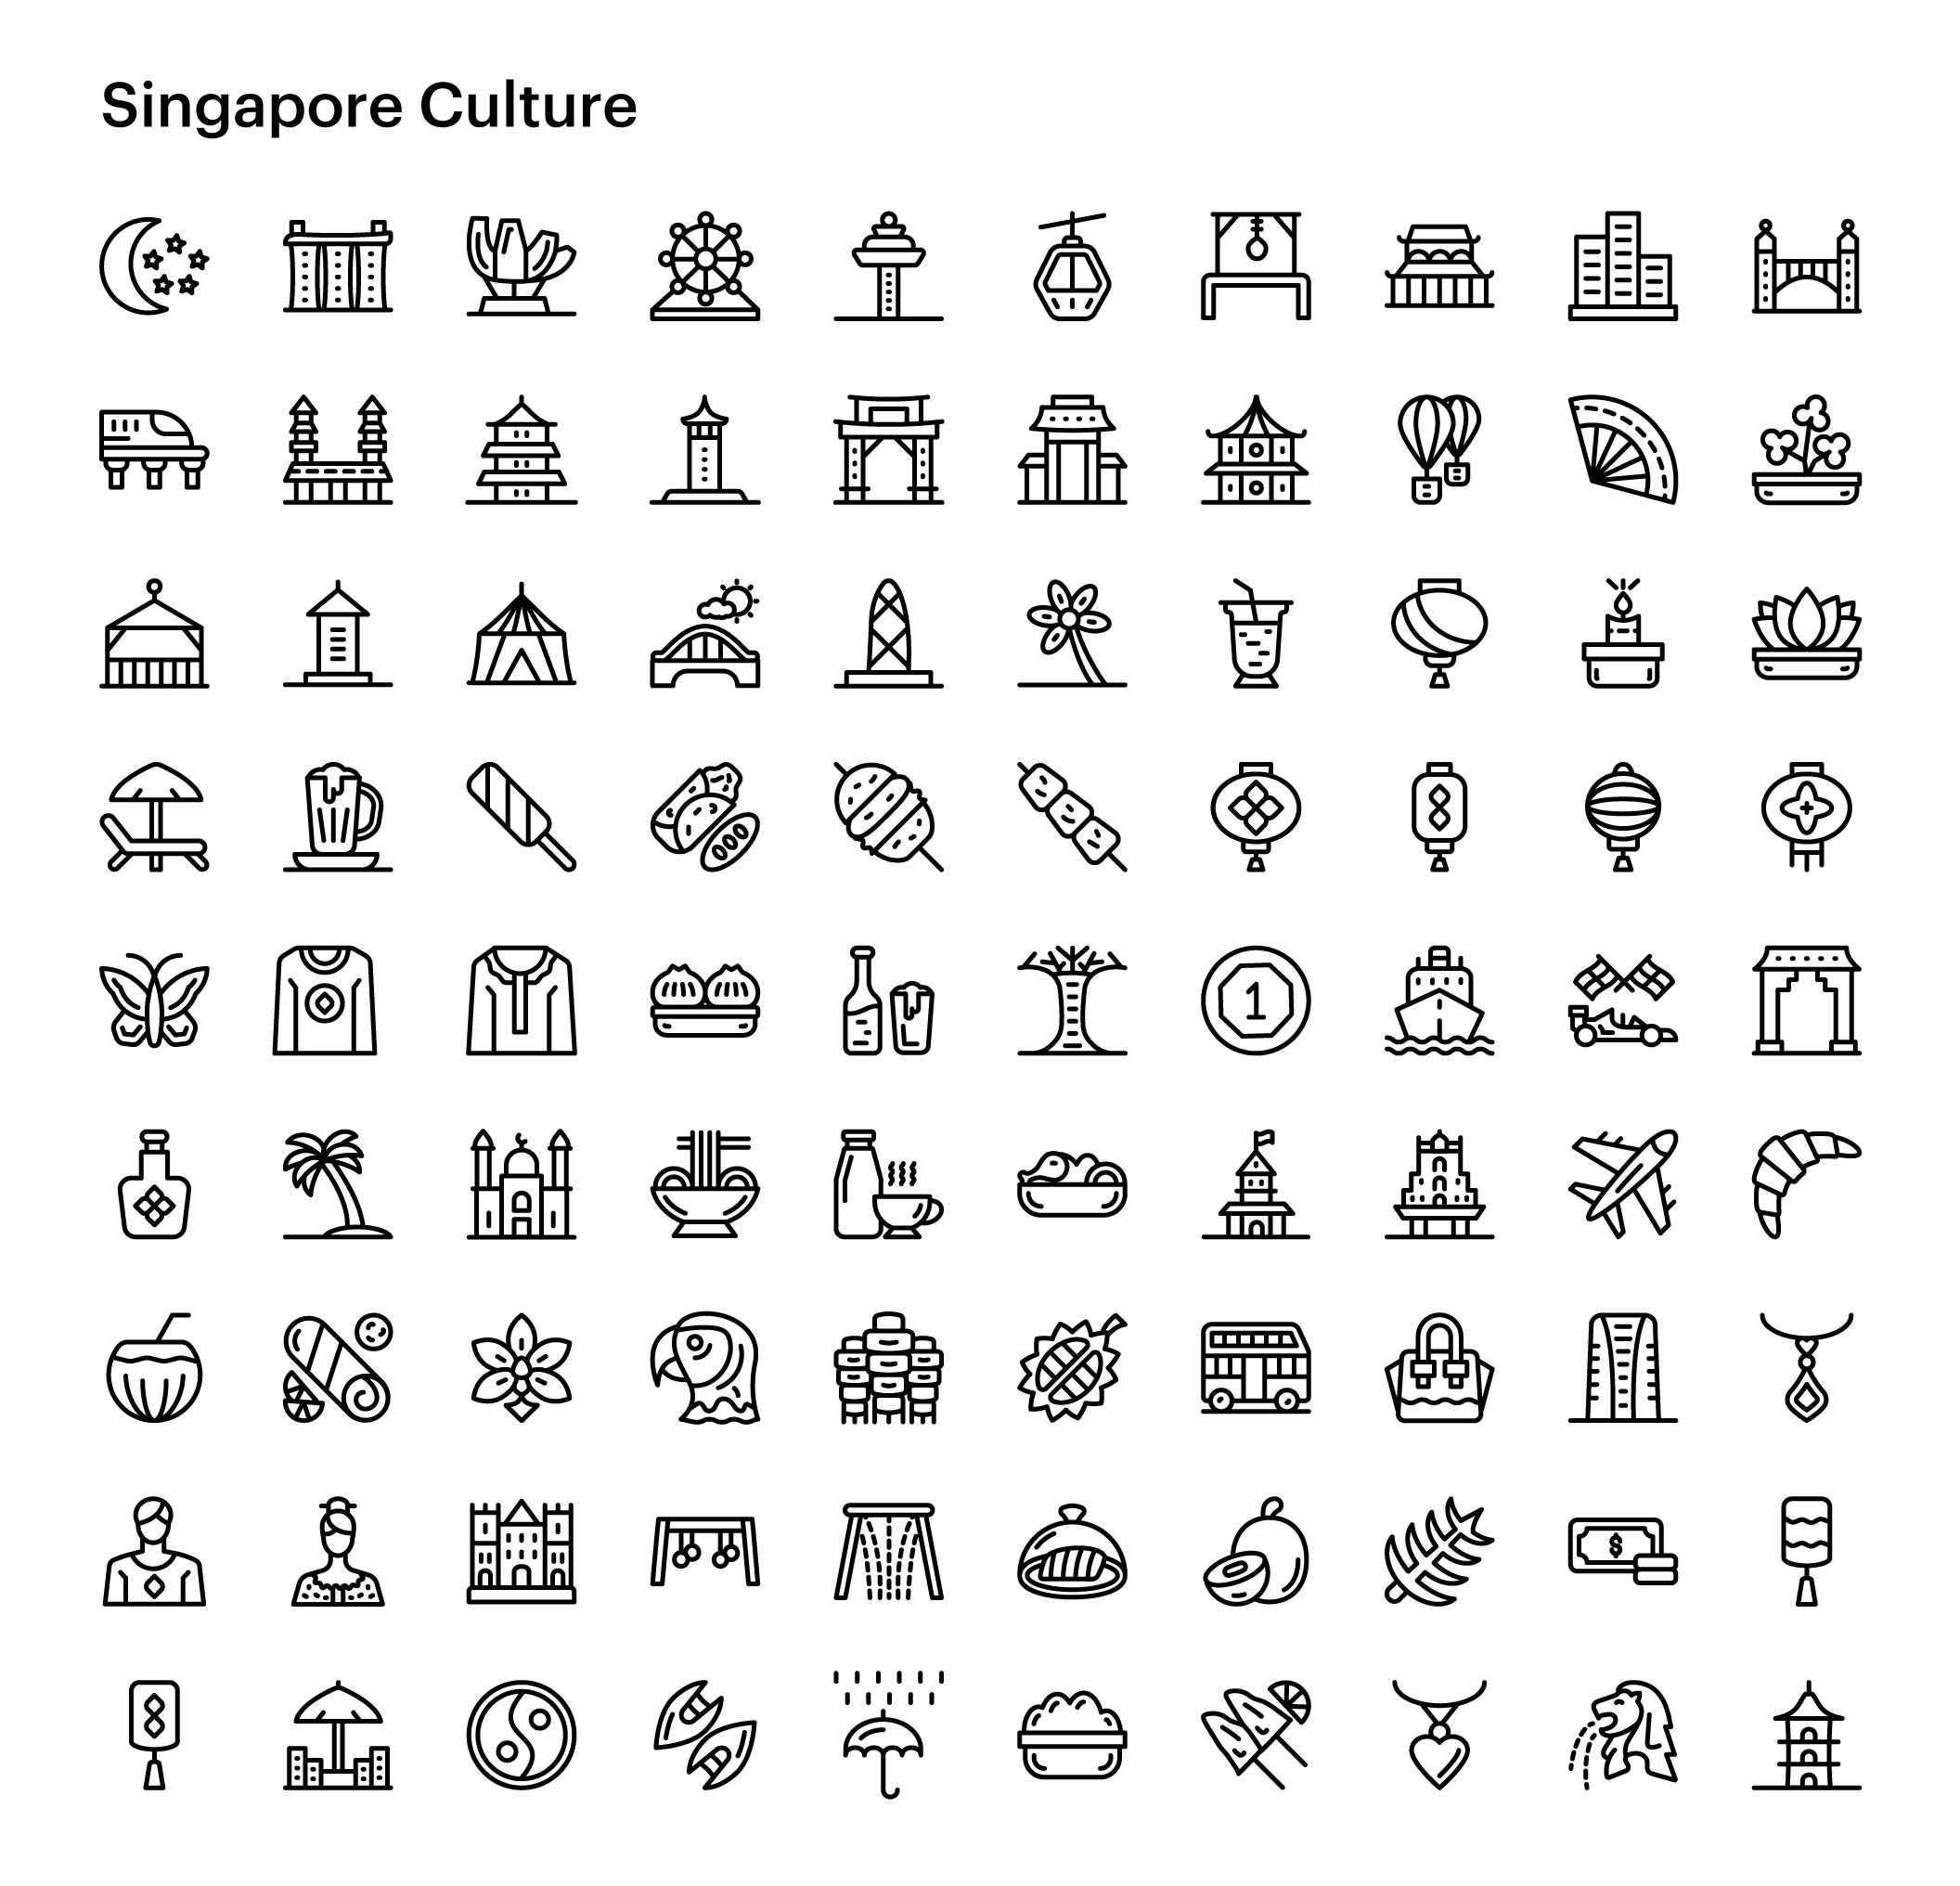 07 1600+多路径样式社区文化金融Icon图标Ai矢量设计素材 1600+ Culture and Communities Vector Icons